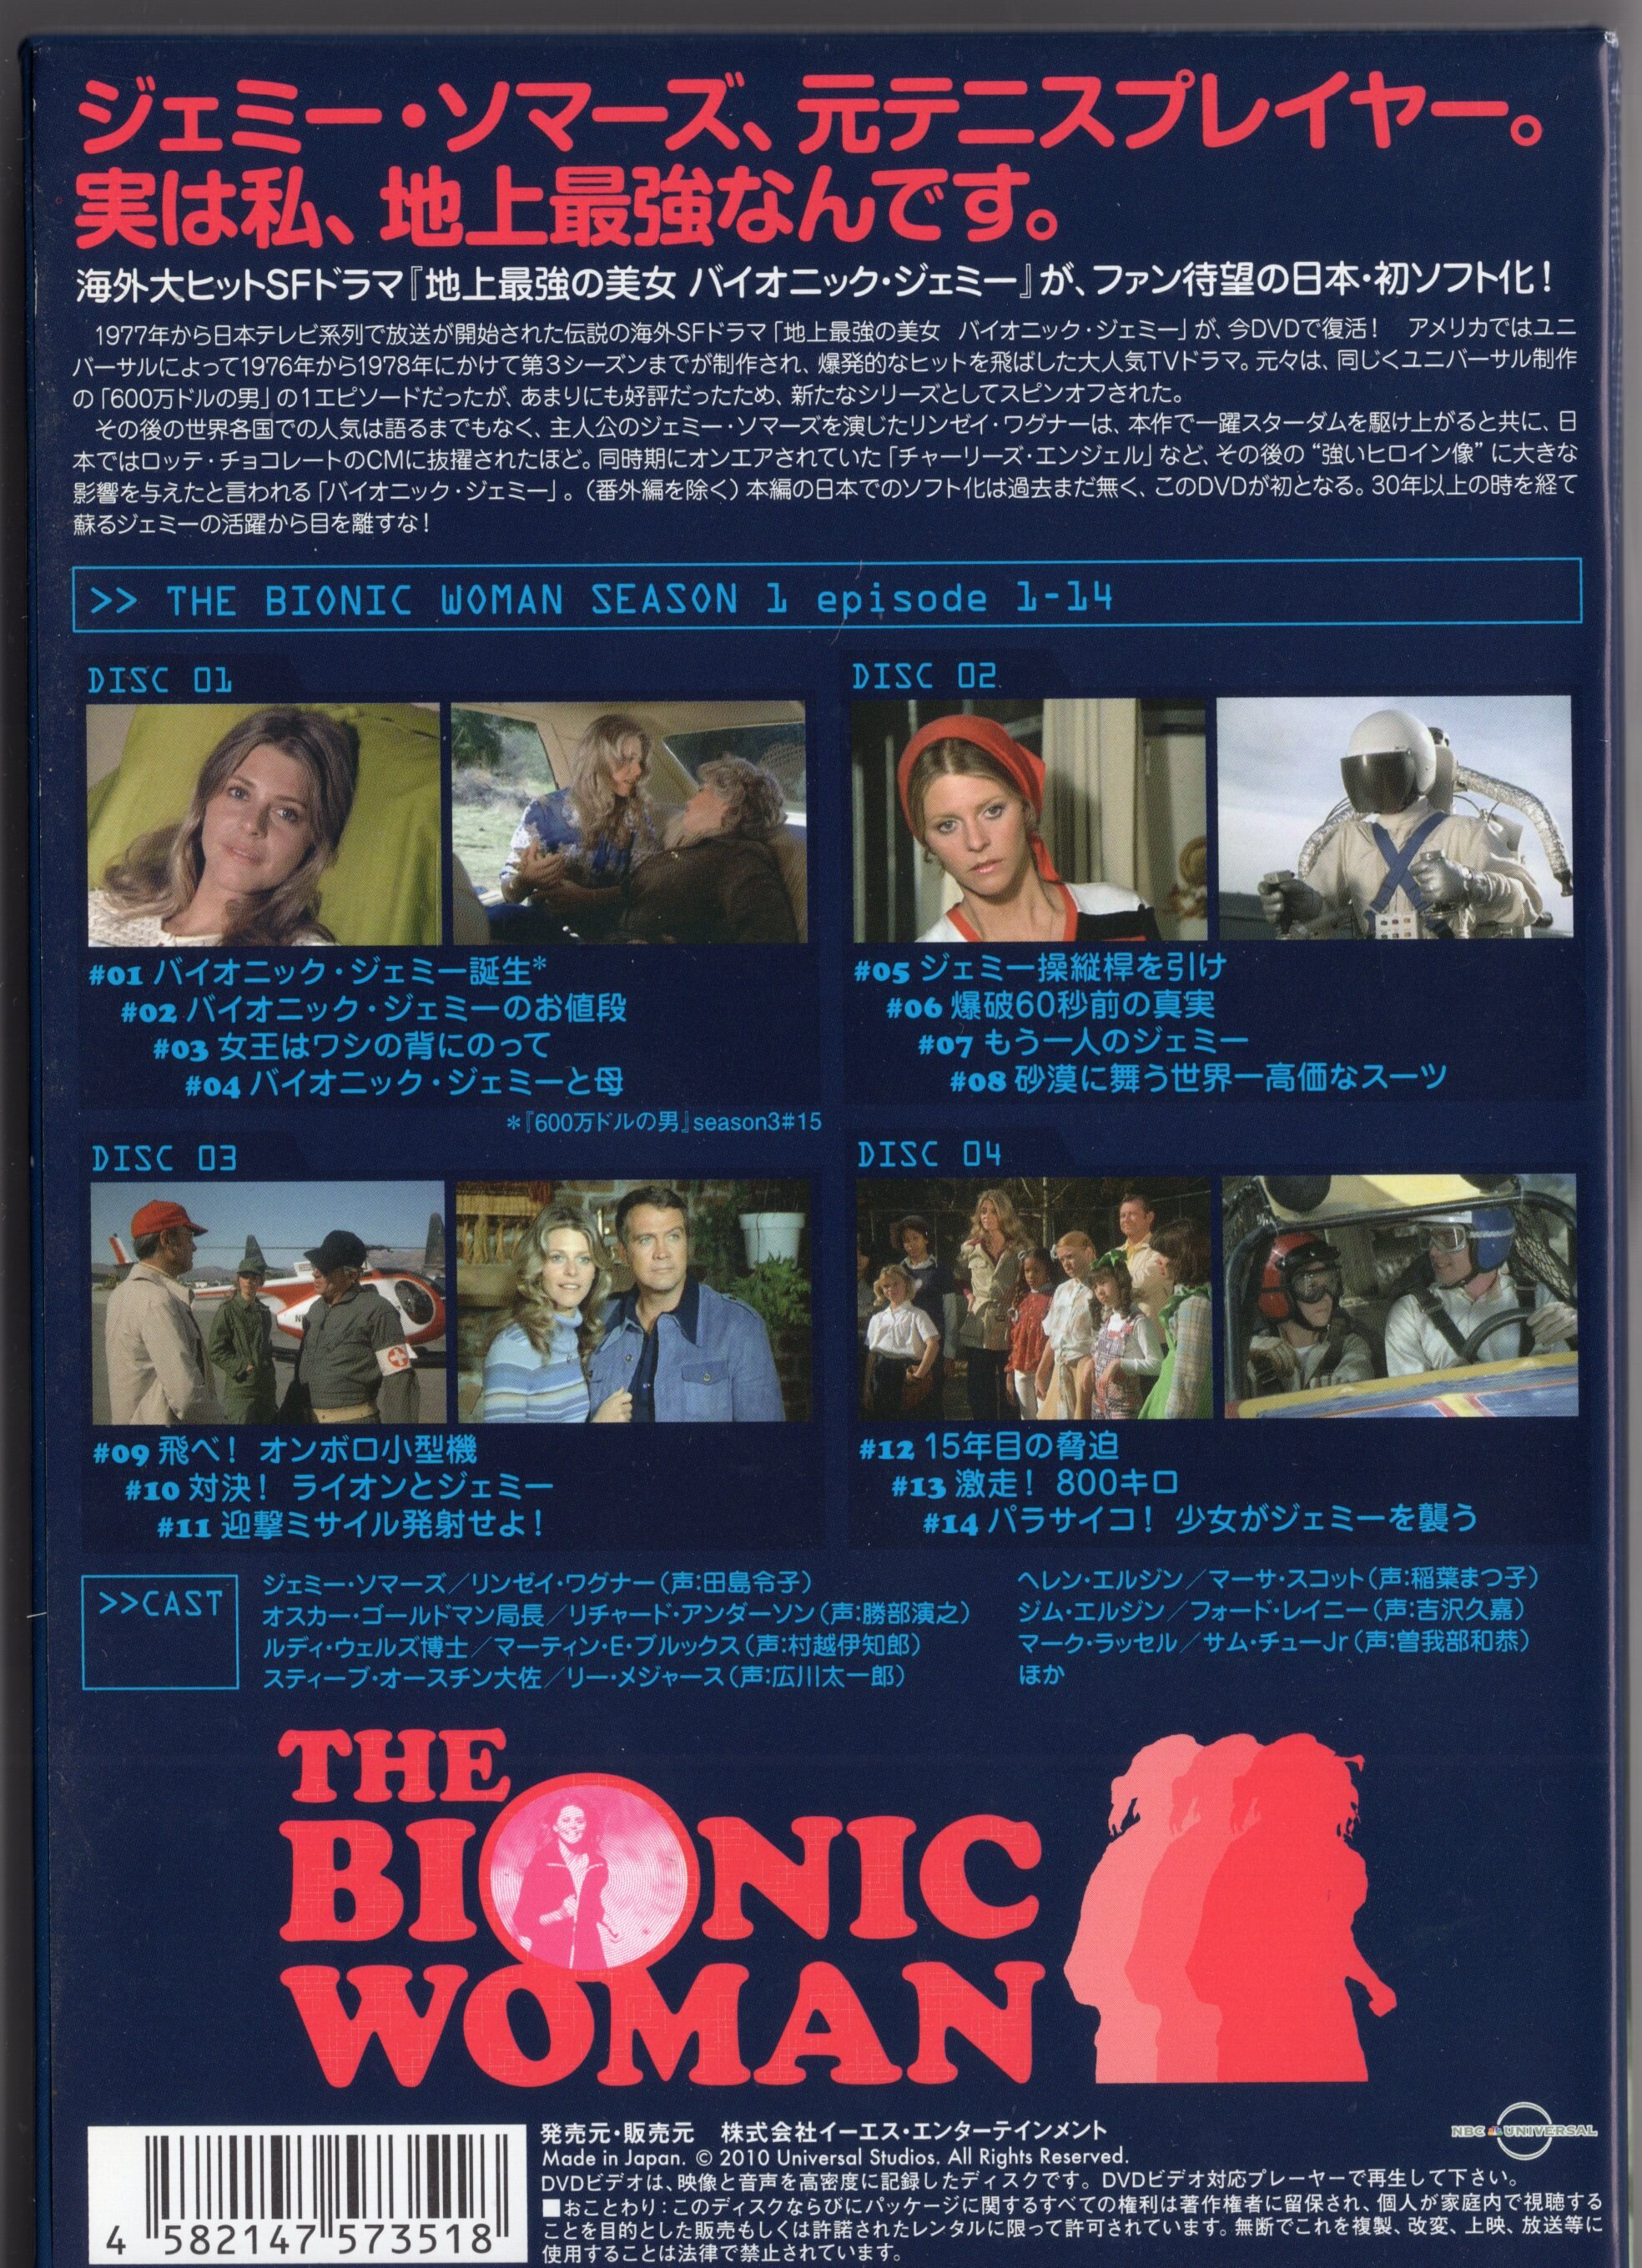 地上最強の美女 バイオニック・ジェミー season1 DVD-BOX